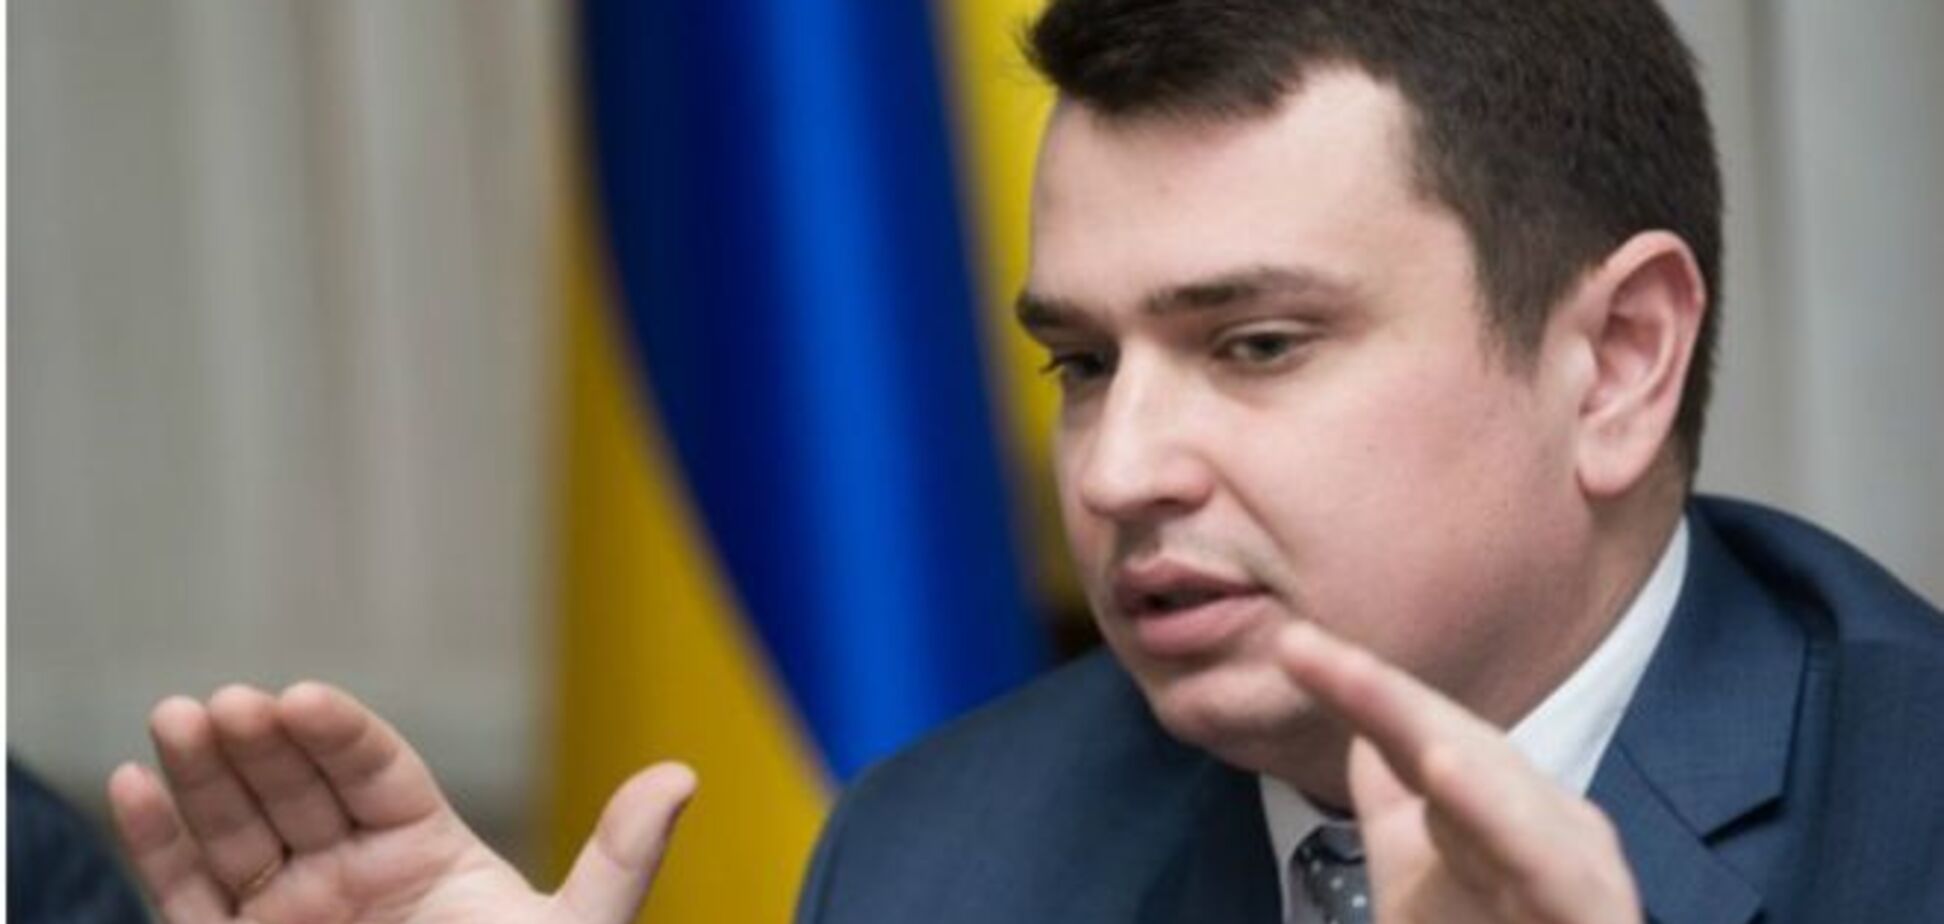 Сытник купил квартиру под Киевом за взятку: новые подробности скандала